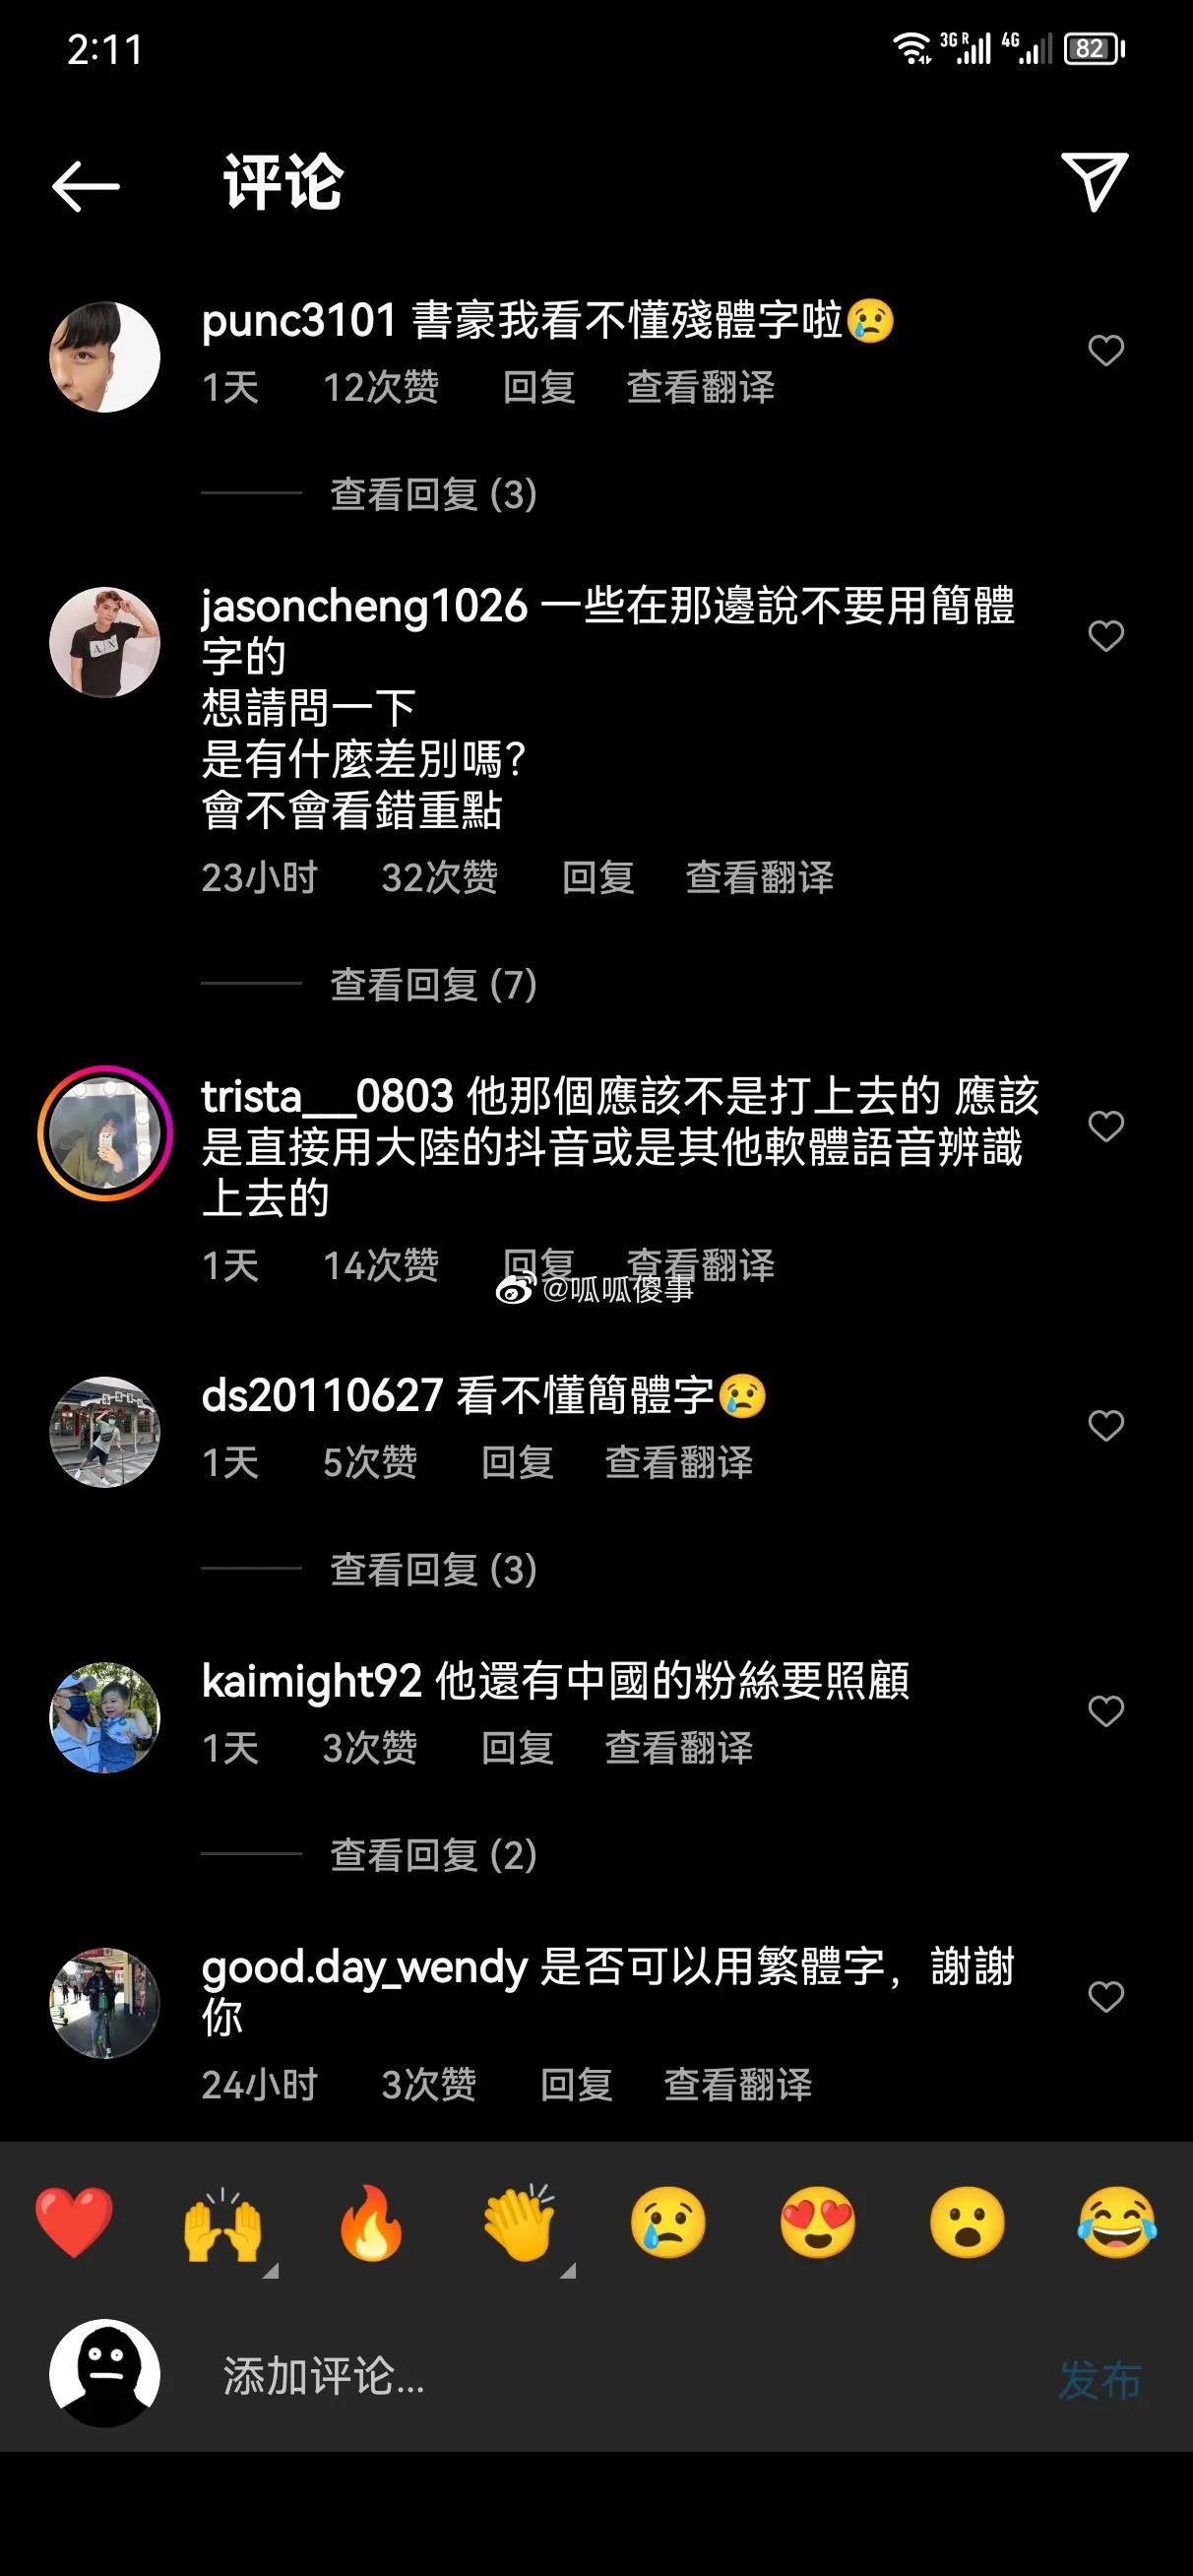 争议！NBA球星林书豪录视频用简体中文，中国台湾网友崩溃：能别用残体字吗？

究(2)